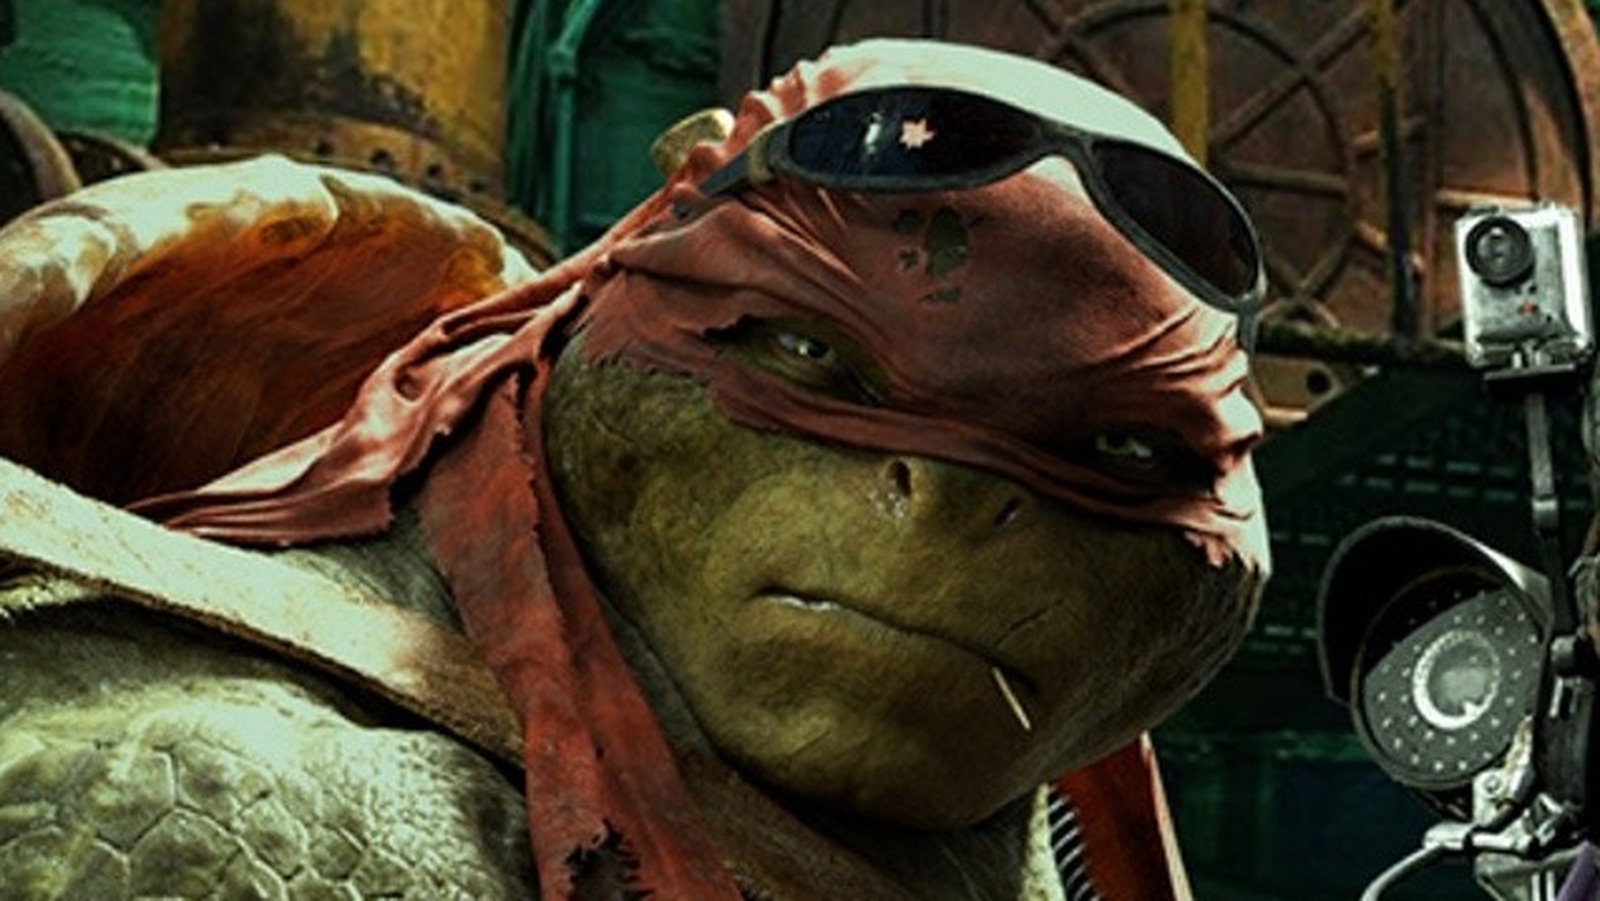 Daredevil was responsible for Teenage Mutant Ninja Turtles